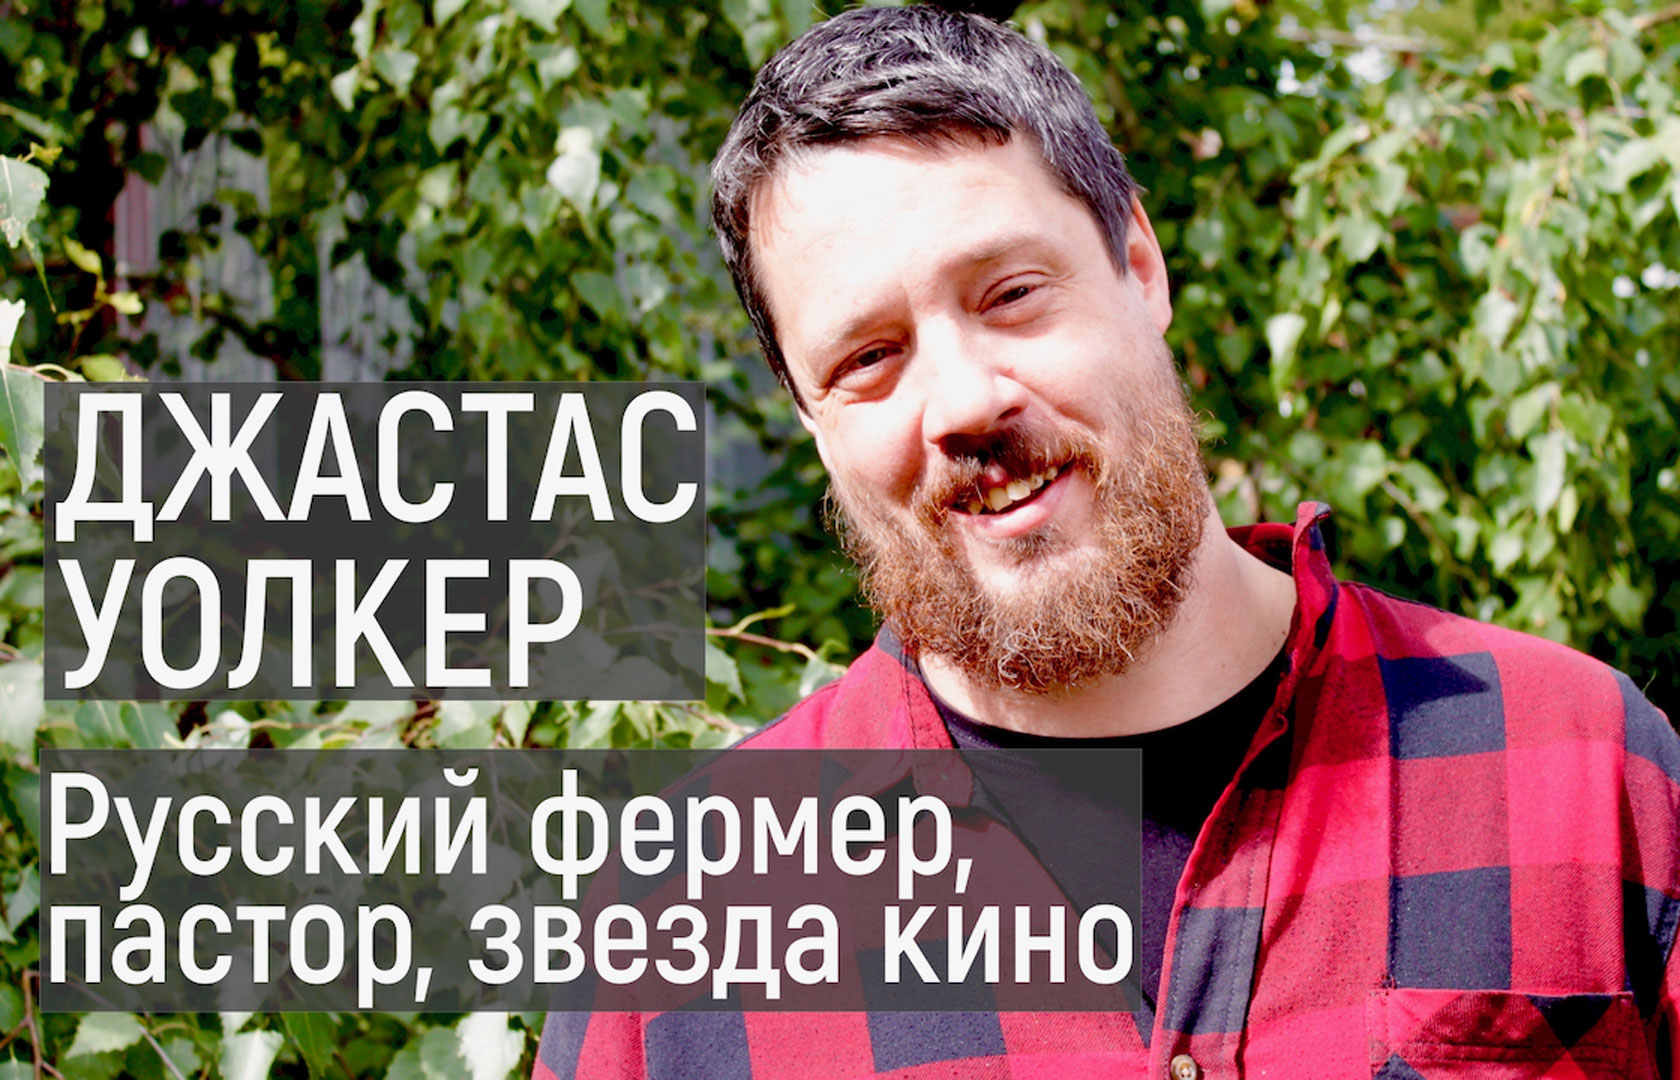 Новое видео – Джастас Уолкер | Русский фермер, пастор, звезда кино